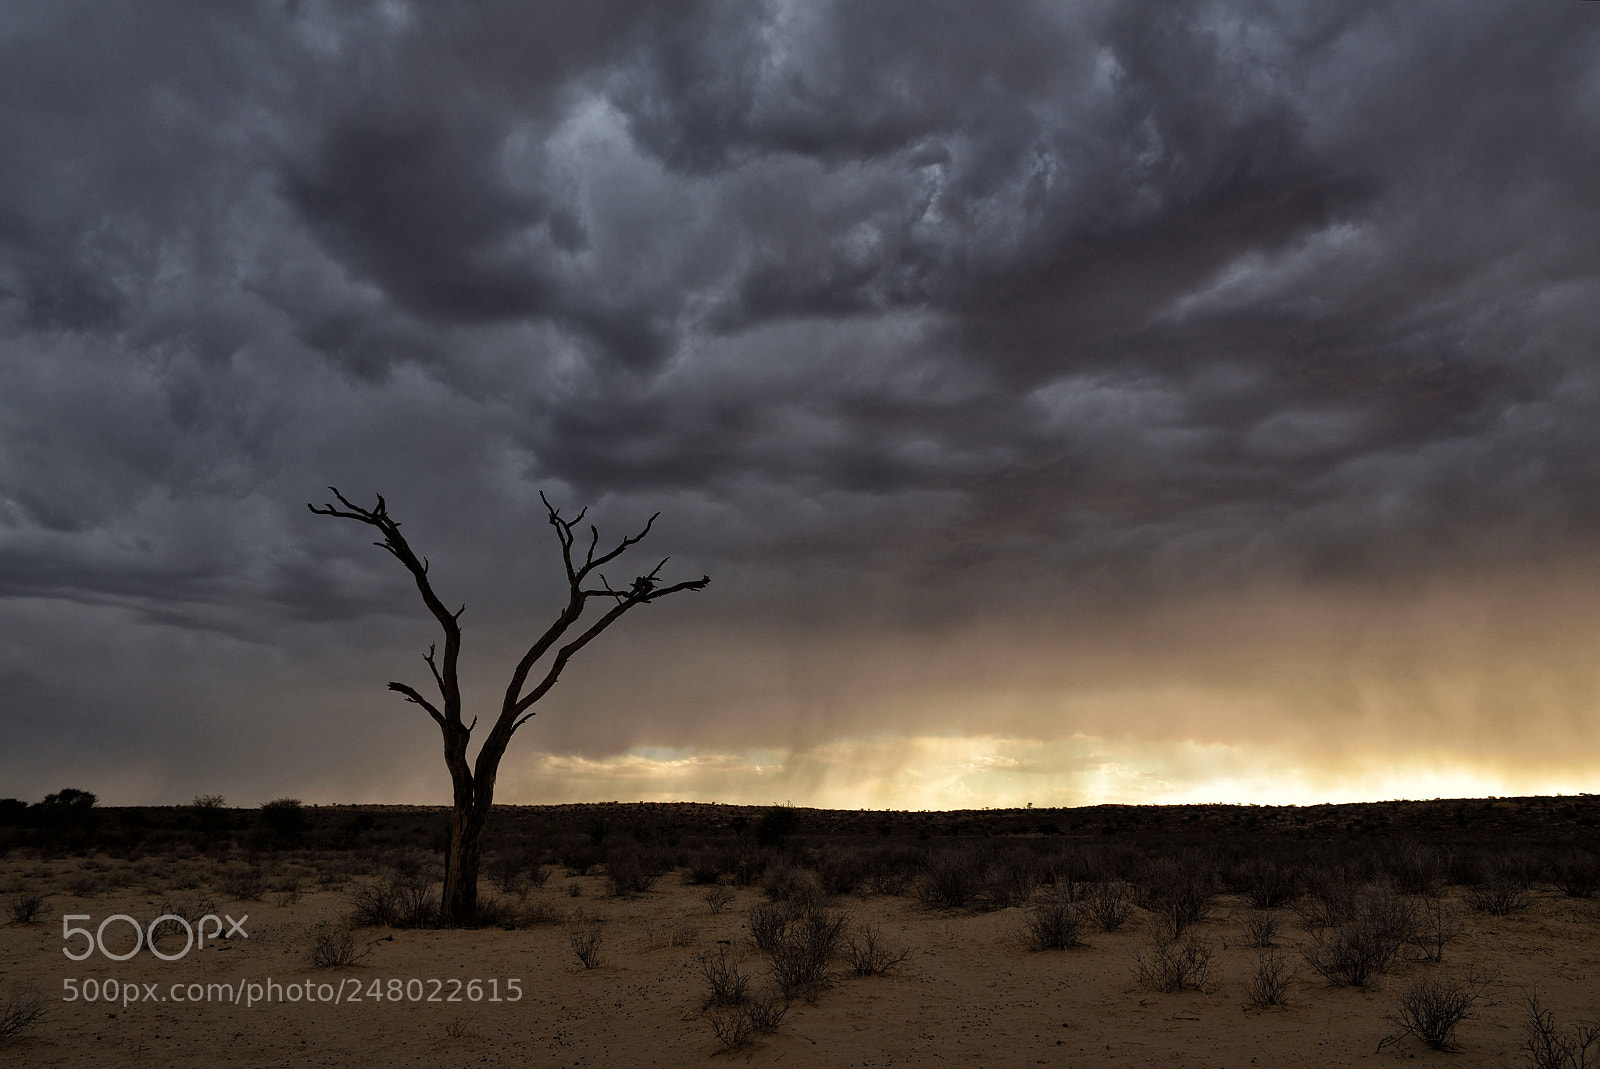 Nikon D750 sample photo. Kalahari thunderstorm photography